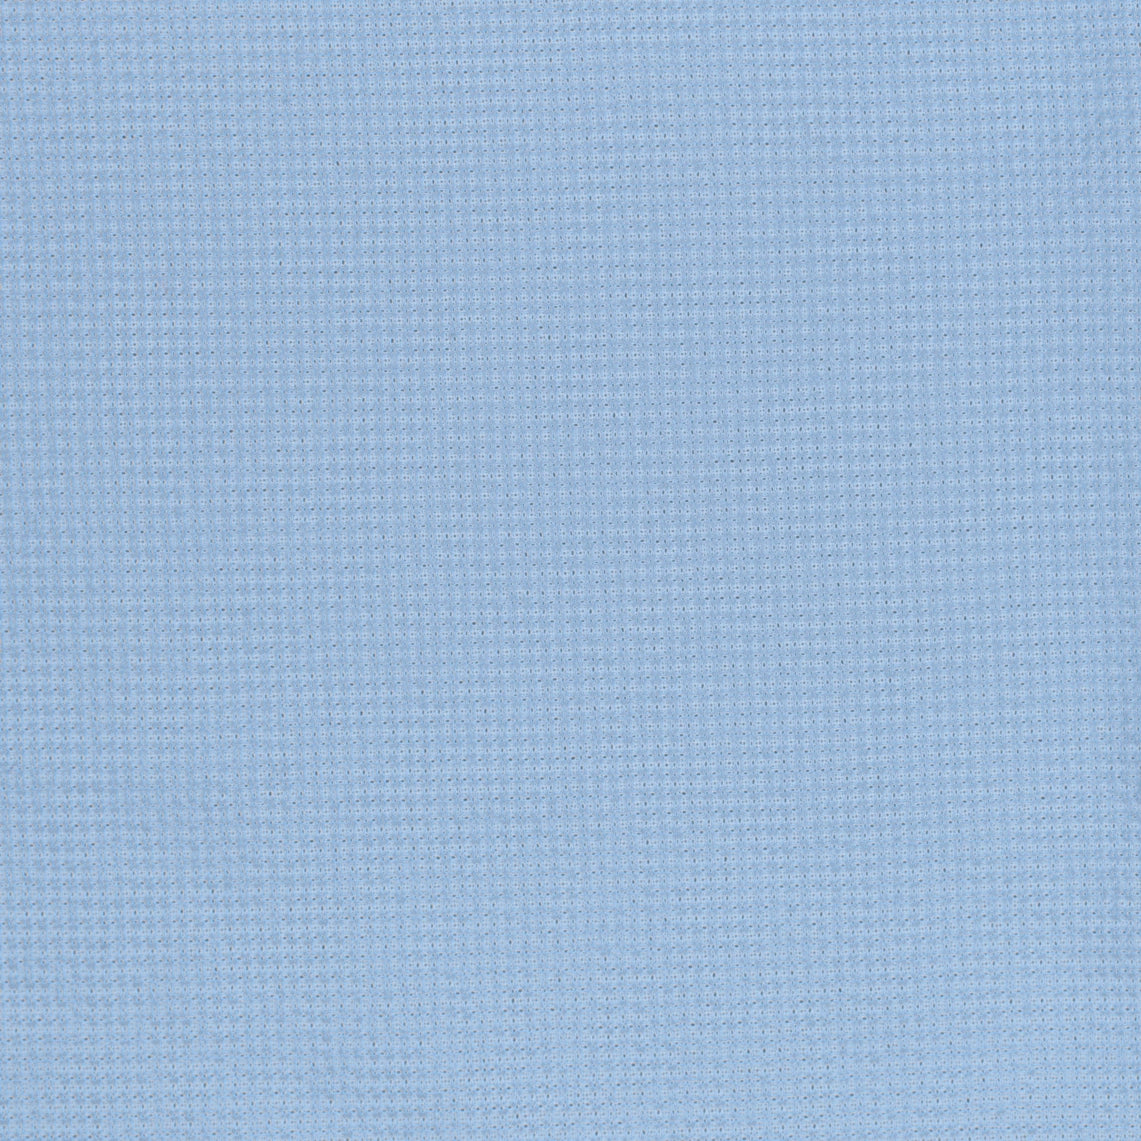 36002-02 Light Blue Polyester Crepe Plain Dyed 100% 210g/yd 54&quot; blue plain dyed polyester woven Solid Color - knit fabric - woven fabric - fabric company - fabric wholesale - fabric b2b - fabric factory - high quality fabric - hong kong fabric - fabric hk - acetate fabric - cotton fabric - linen fabric - metallic fabric - nylon fabric - polyester fabric - spandex fabric - chun wing hing - cwh hk - fabric worldwide ship - 針織布 - 梳織布 - 布料公司- 布料批發 - 香港布料 - 秦榮興